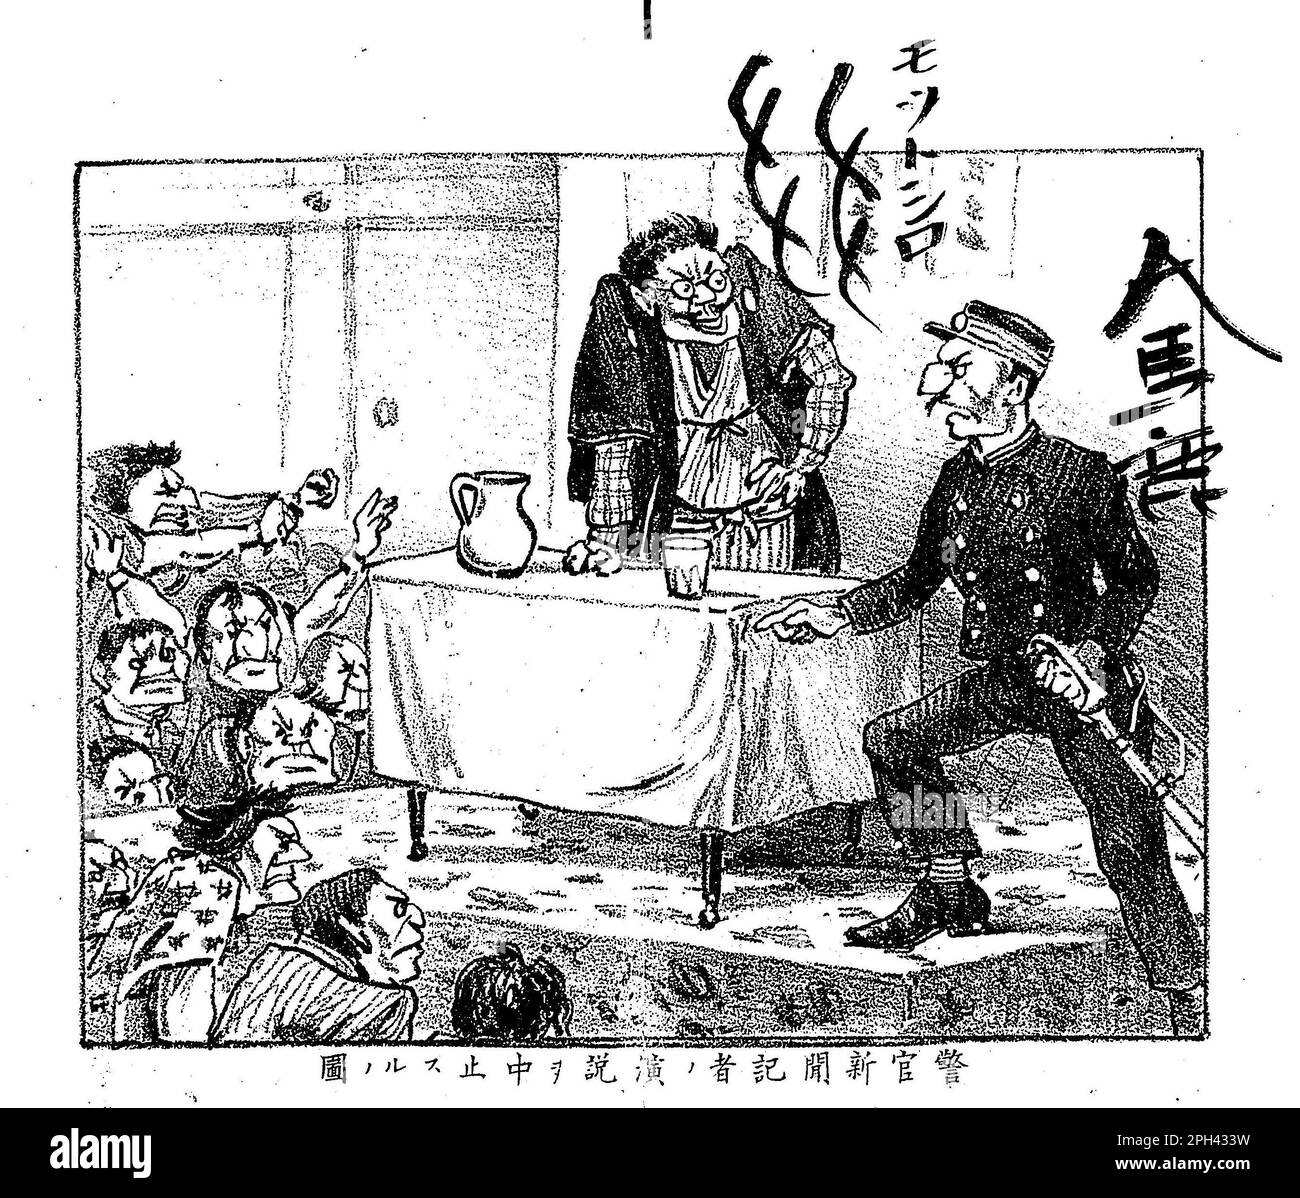 Un policier interrompt le discours d'un journaliste de presse dans la période Meiji au Japon. De 'Kuzuya no Kago (panier de la poubelle)', n°5, 'koshi no enzetsu à Kutsushita no shidda (crache de vieux papier et solage de chaussettes). Auteur Nishimura tenshu (1865-1924). Publié en 1887-1888 (Meiji 20-21). Banque D'Images